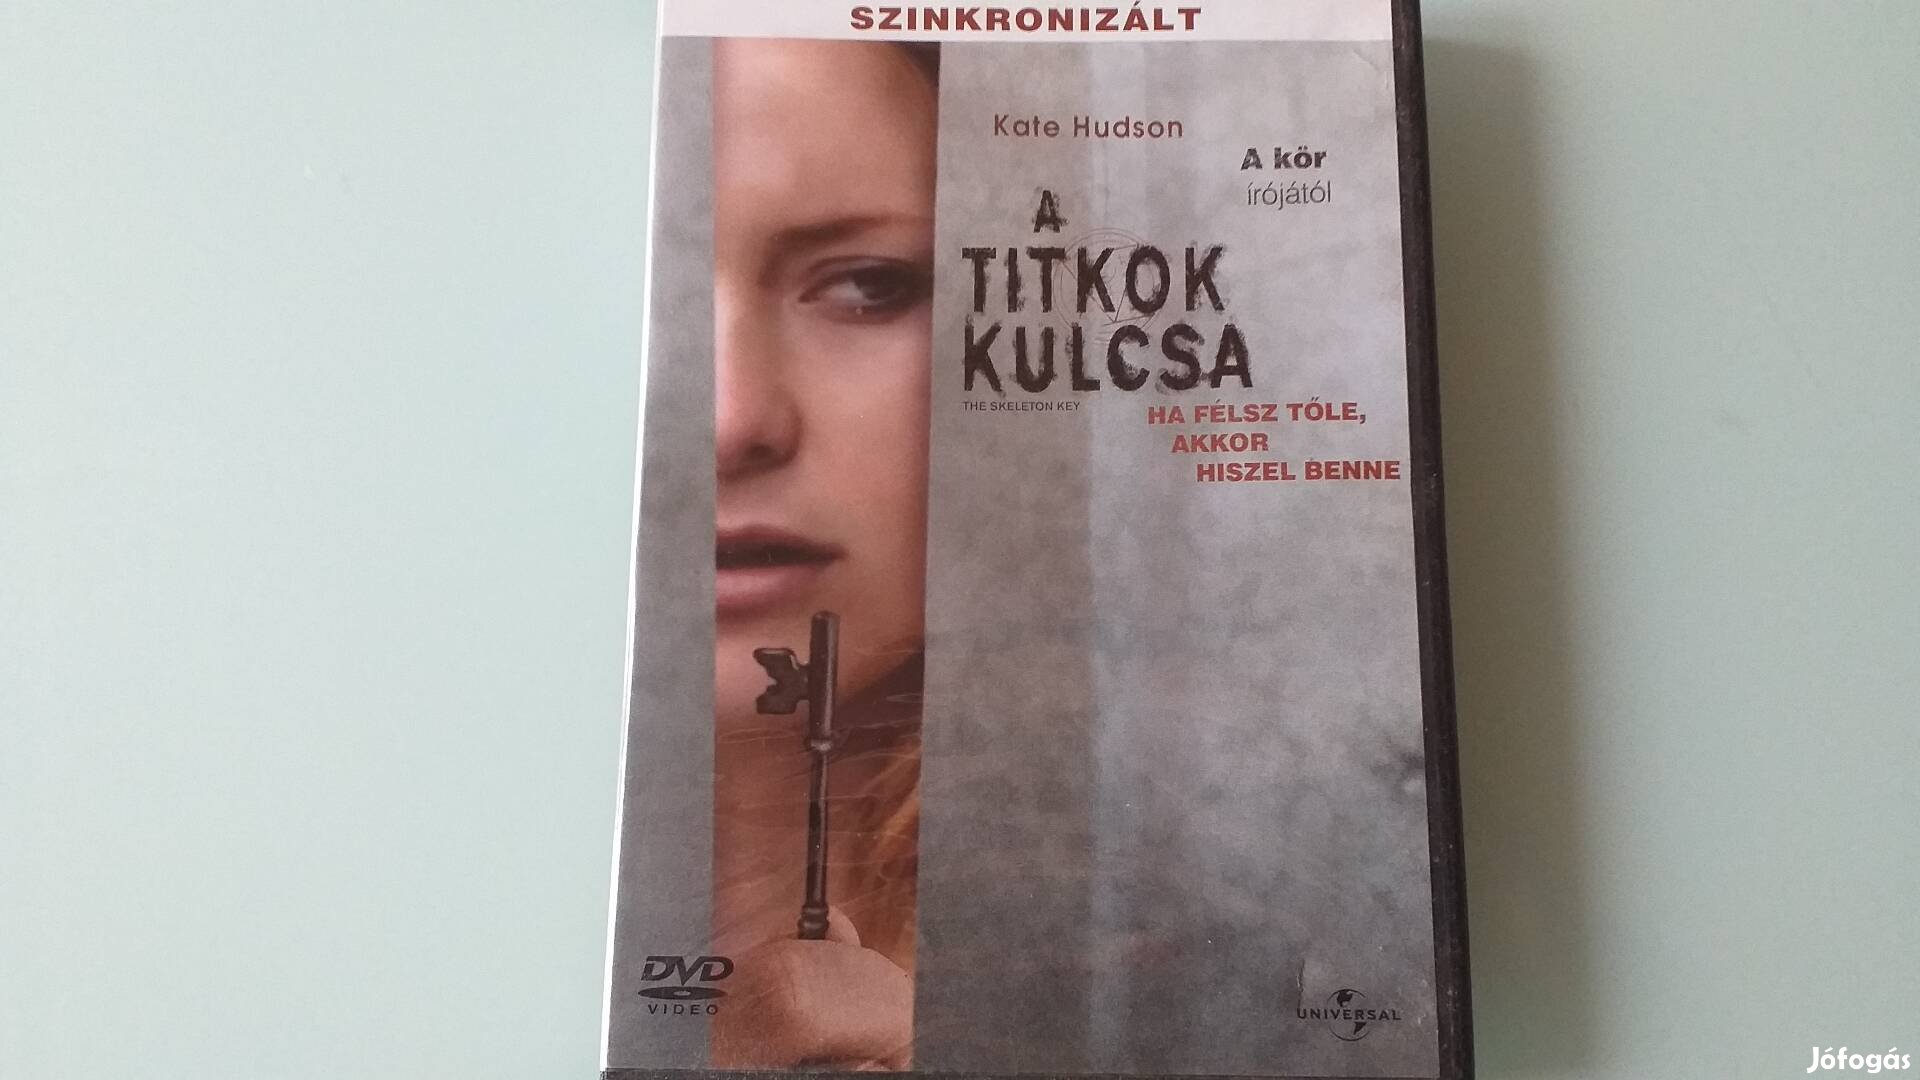 Titkok kulcsa thriller DVD film-Kate Hudson